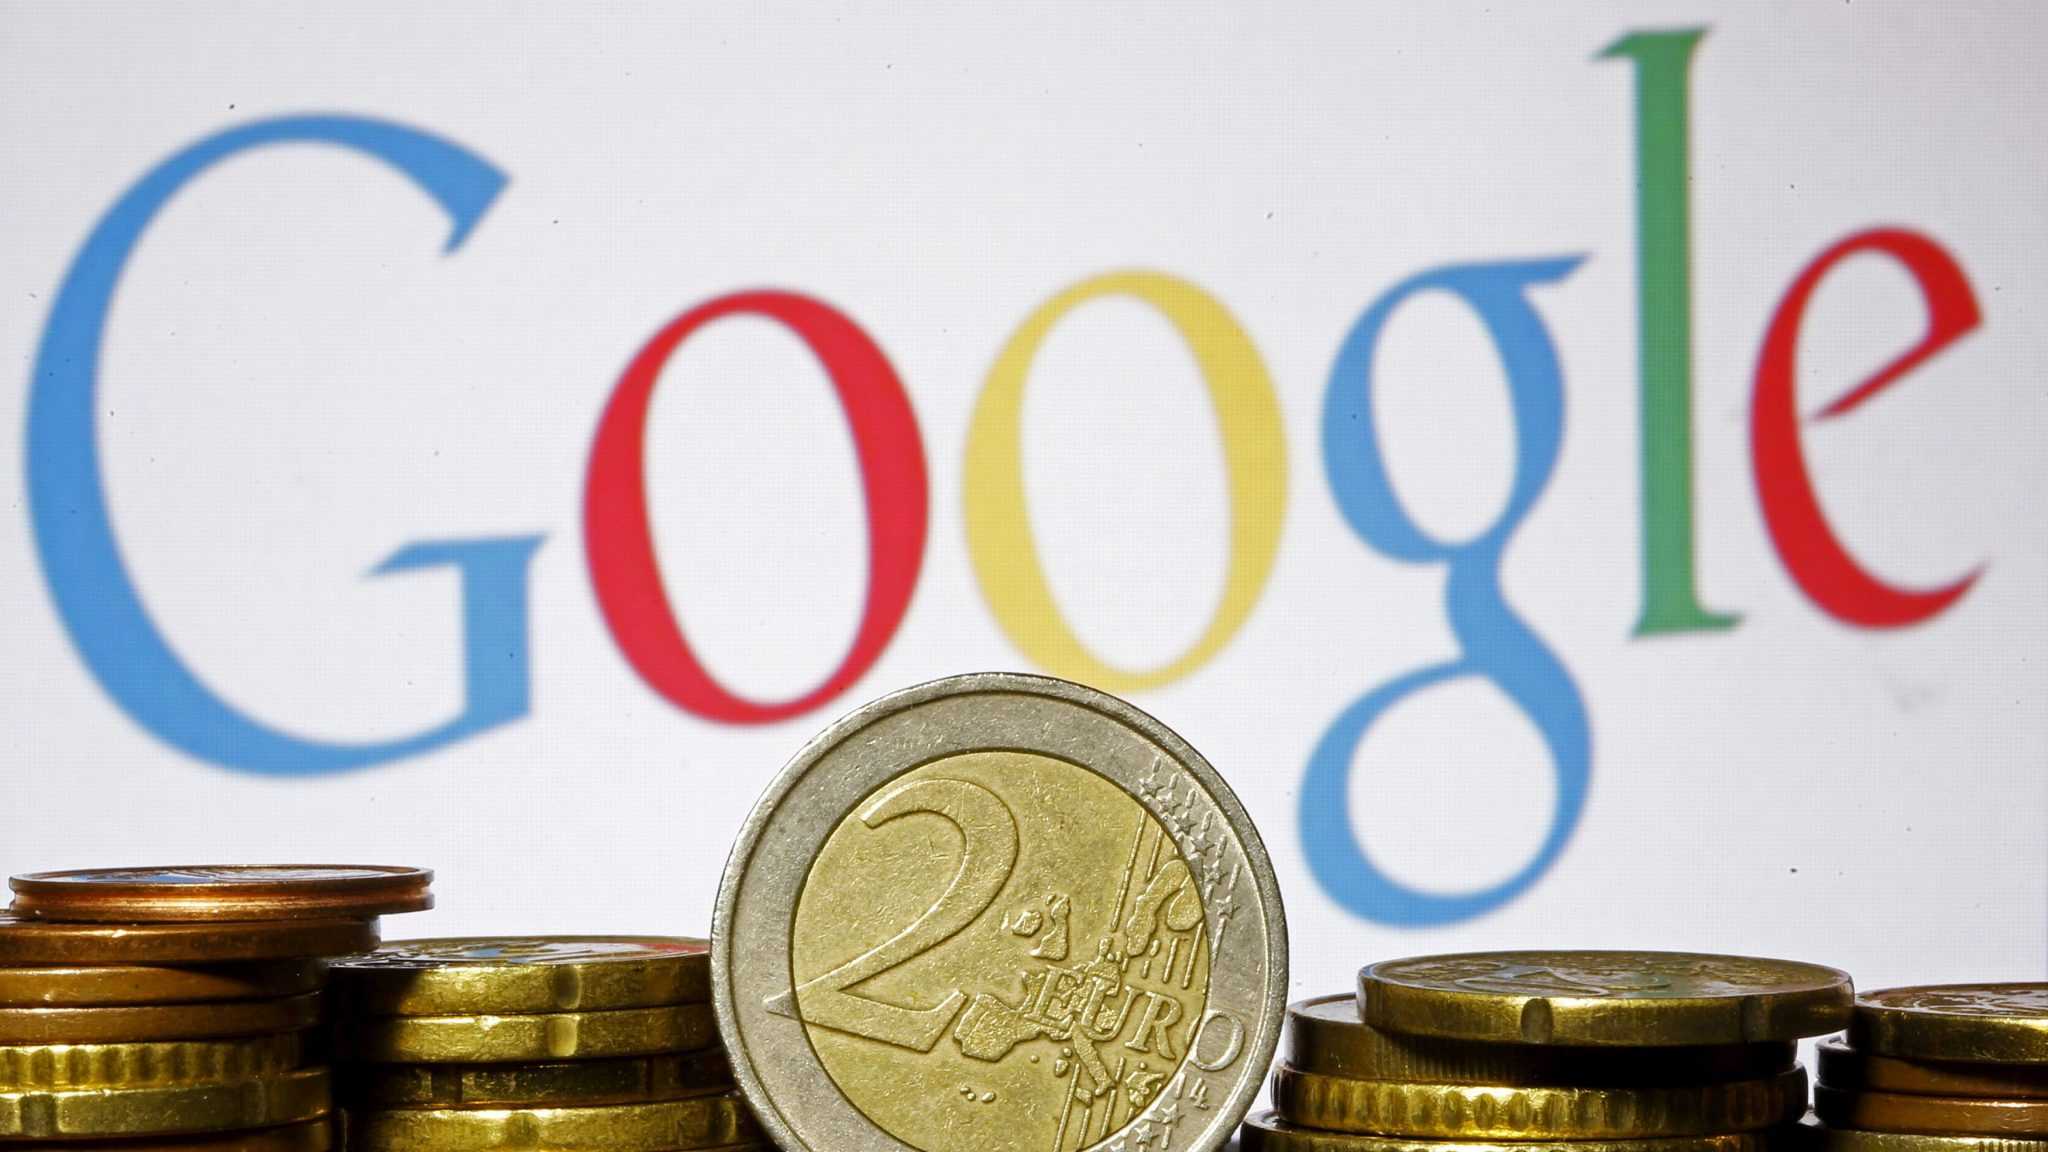 Французскую организацию Google оштрафовали на 220 миллионов евро